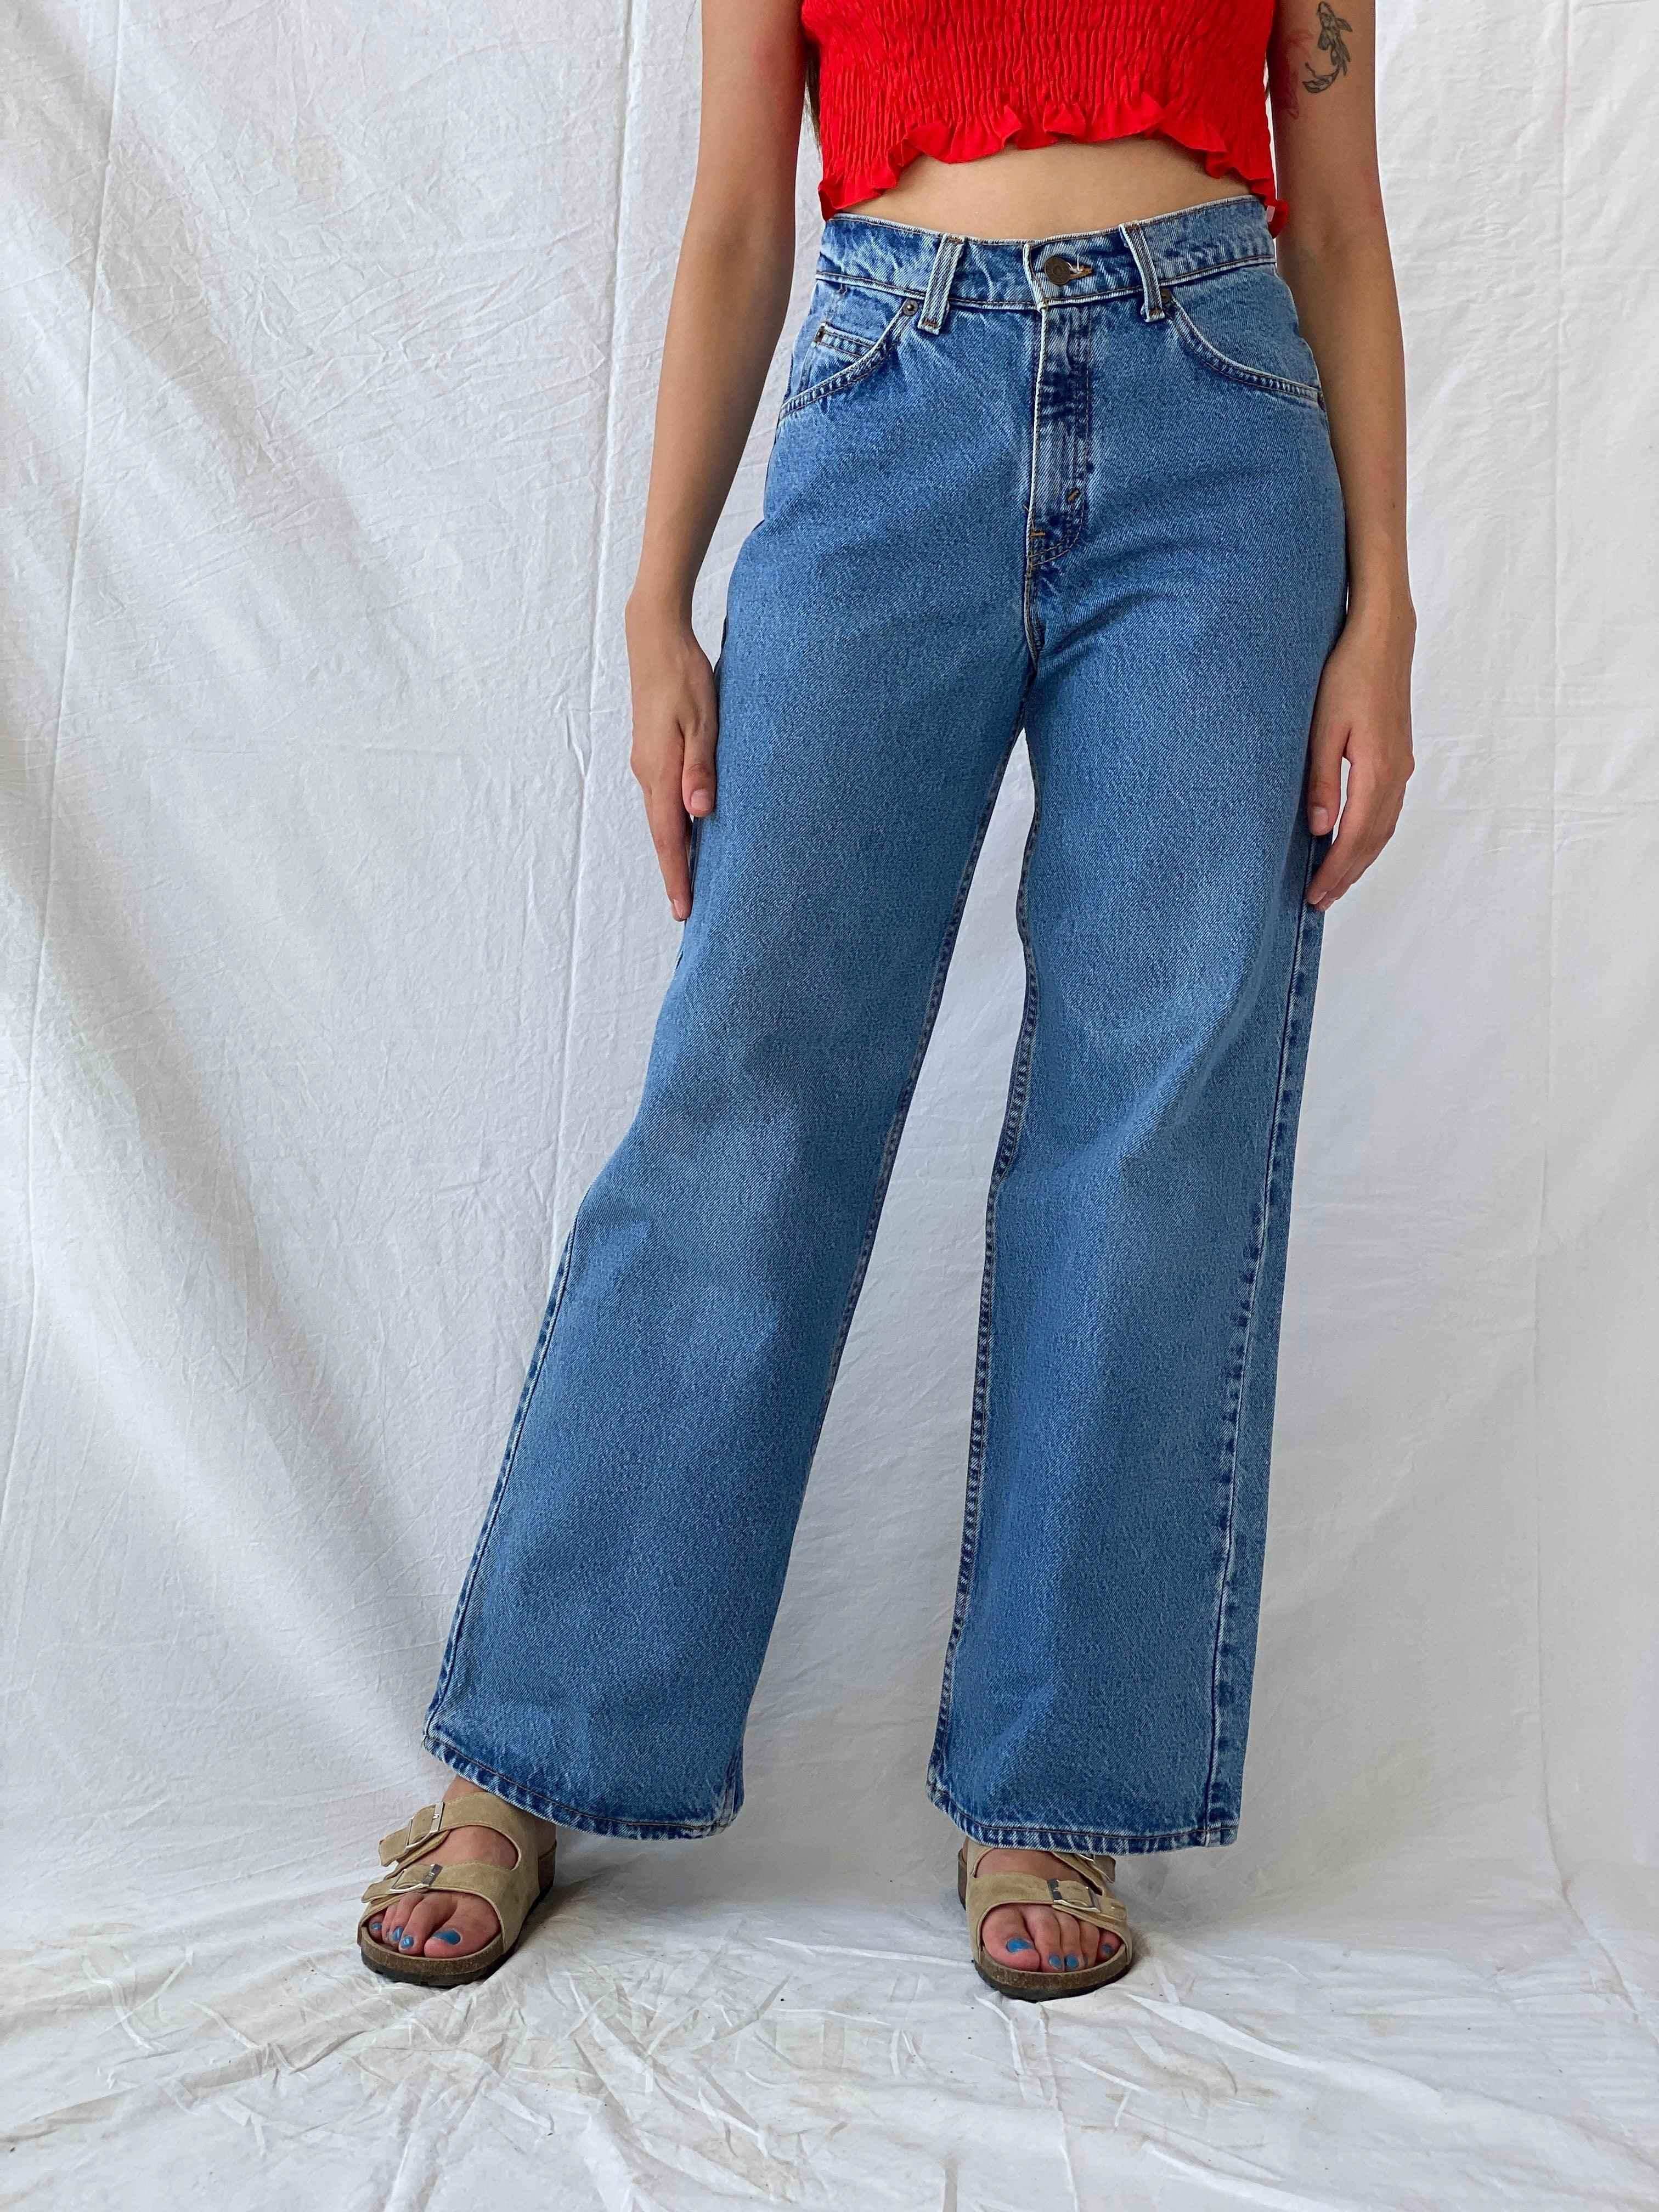 Vintage Levi’s Jeans - Balagan Vintage Jeans 90s, levis jeans, Mira